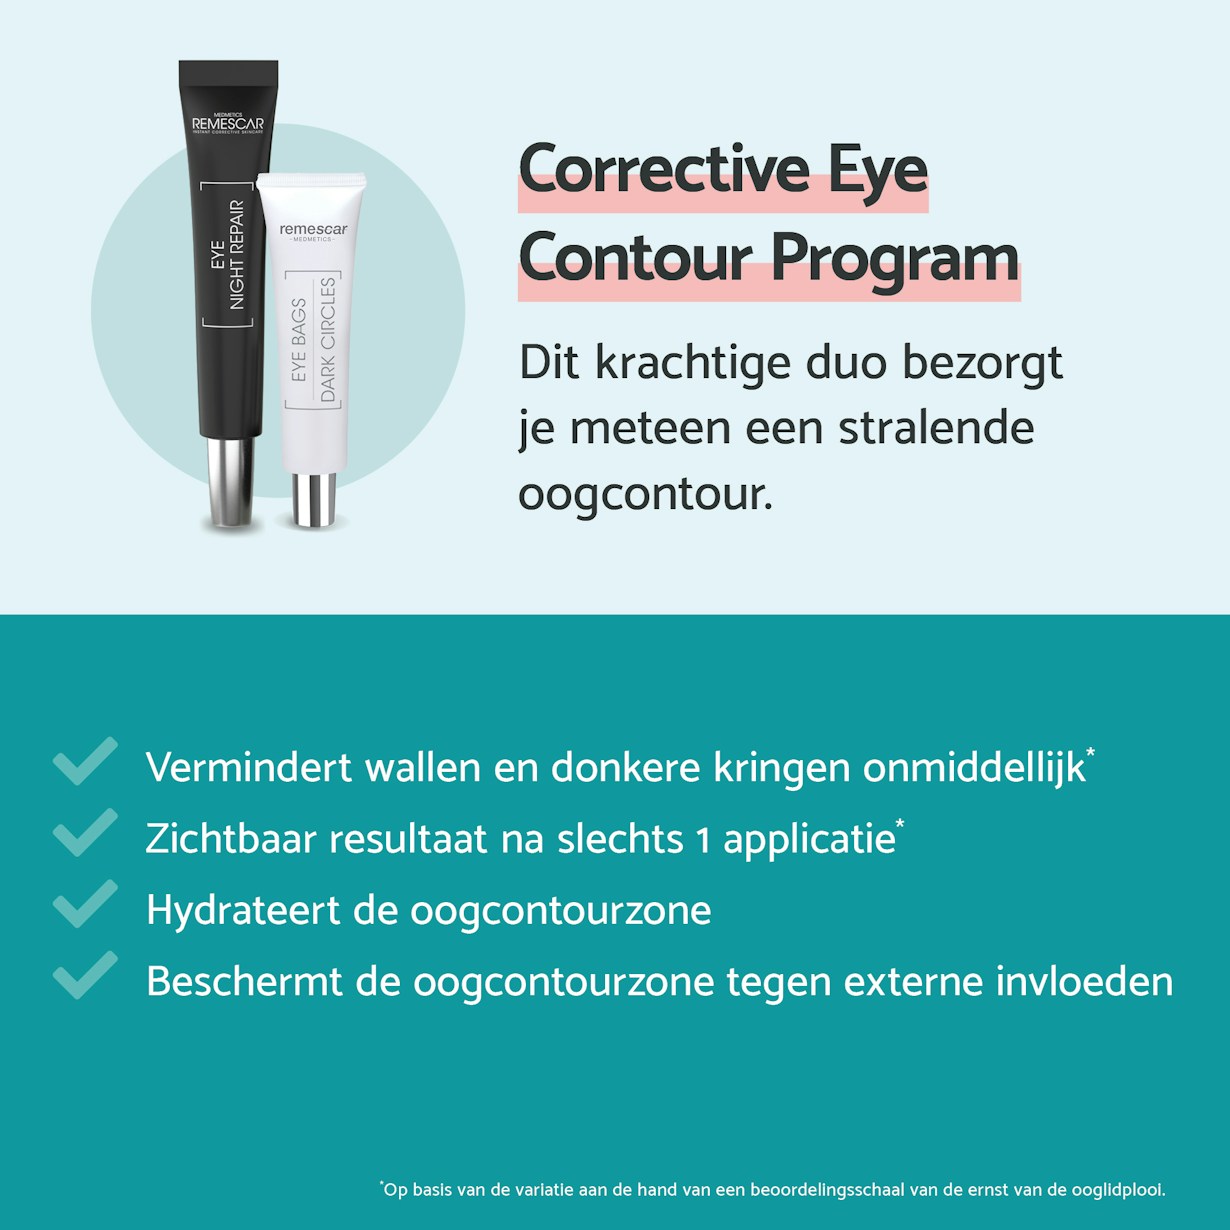 Corrective eye contour program6